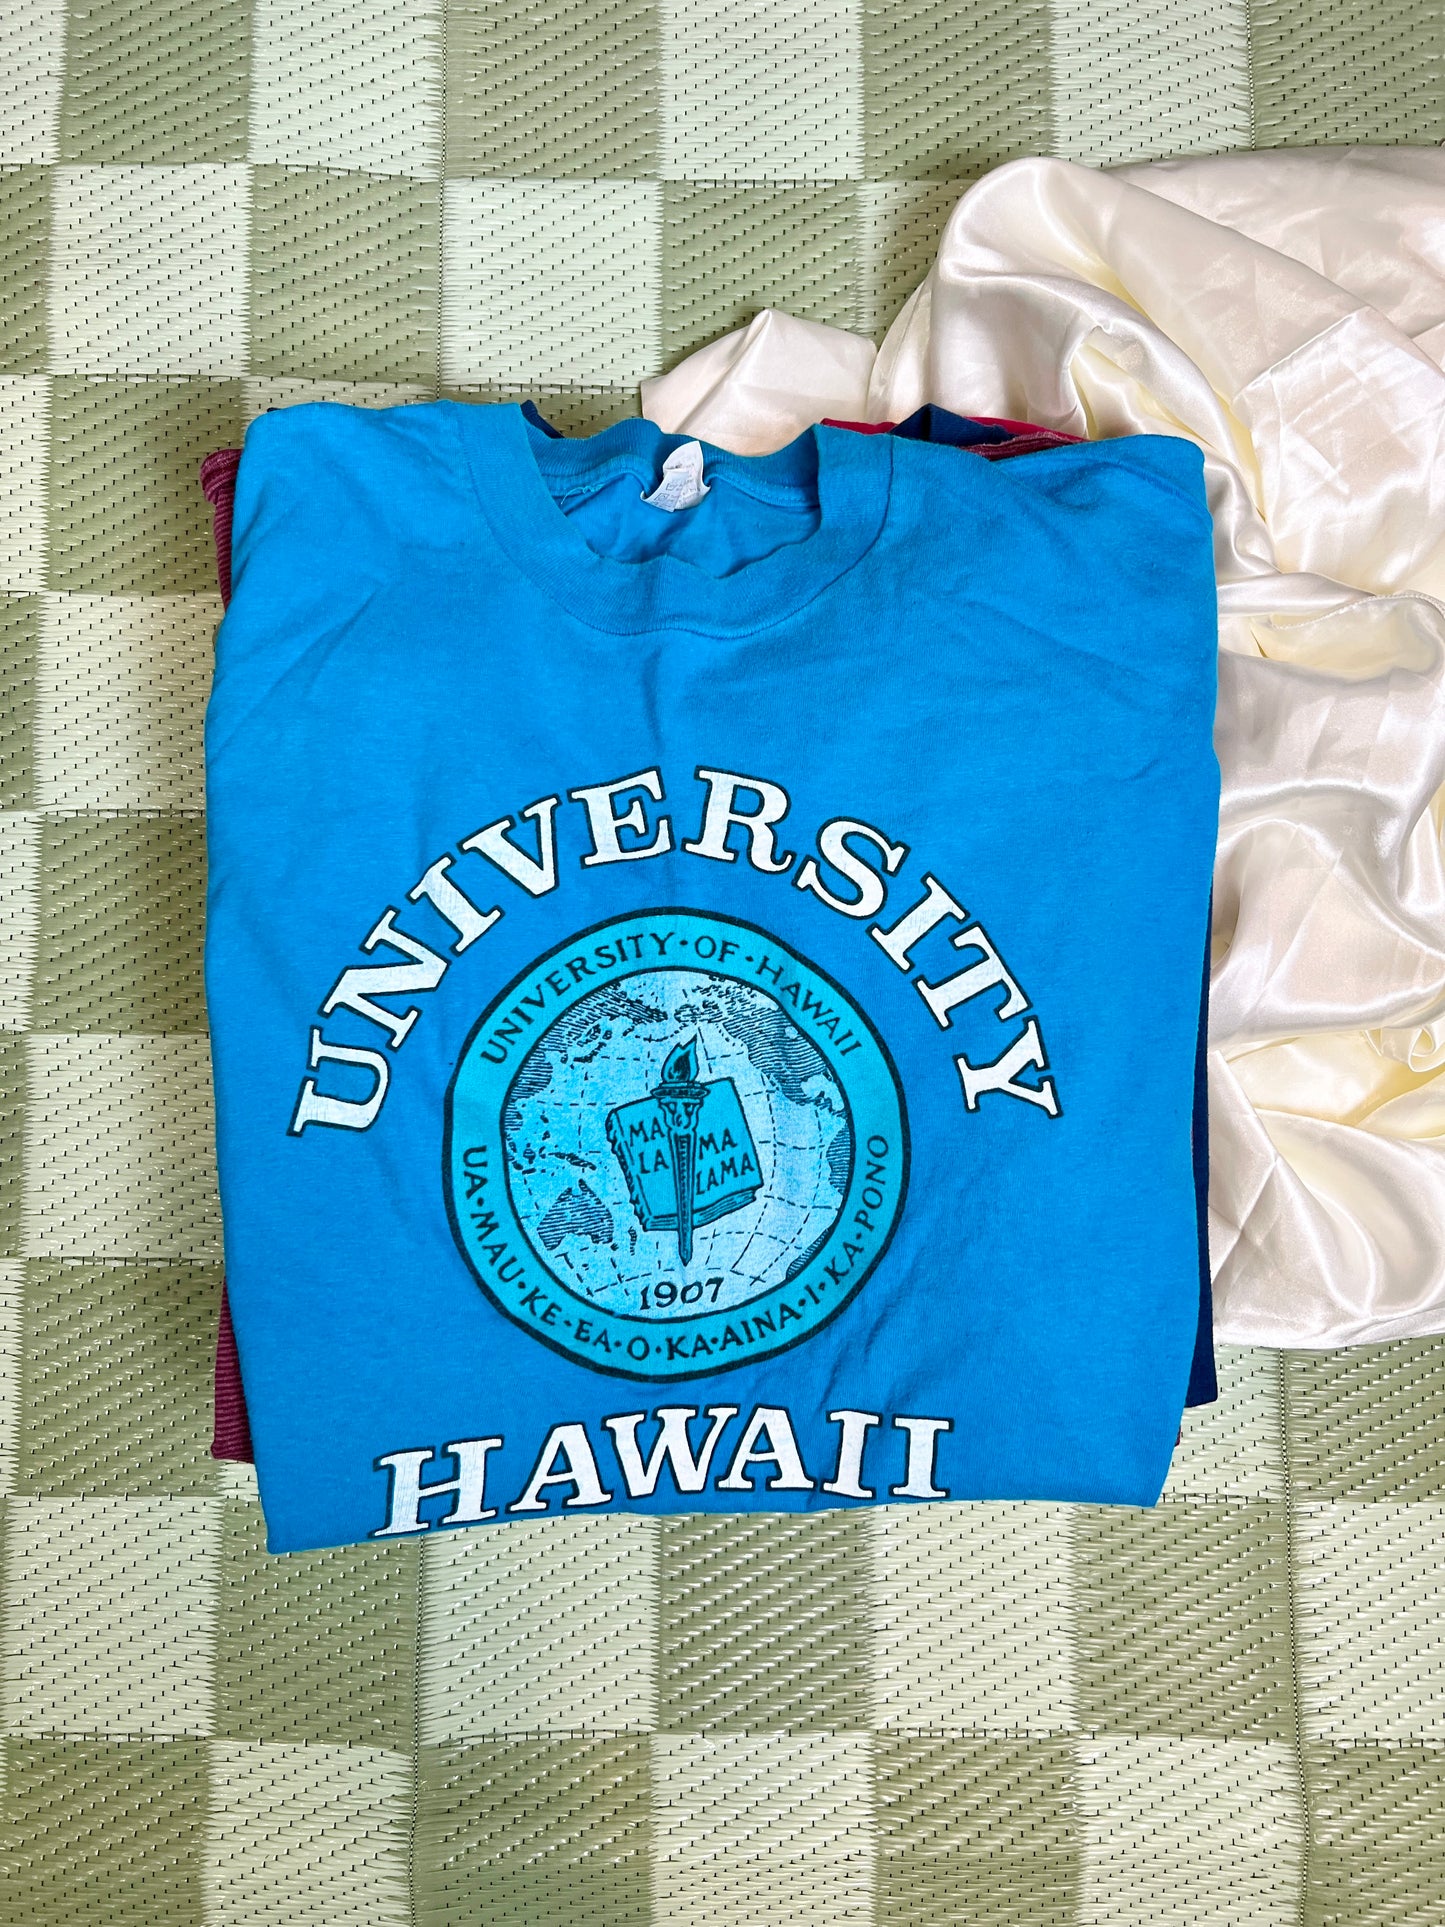 University of Hawaii Tee